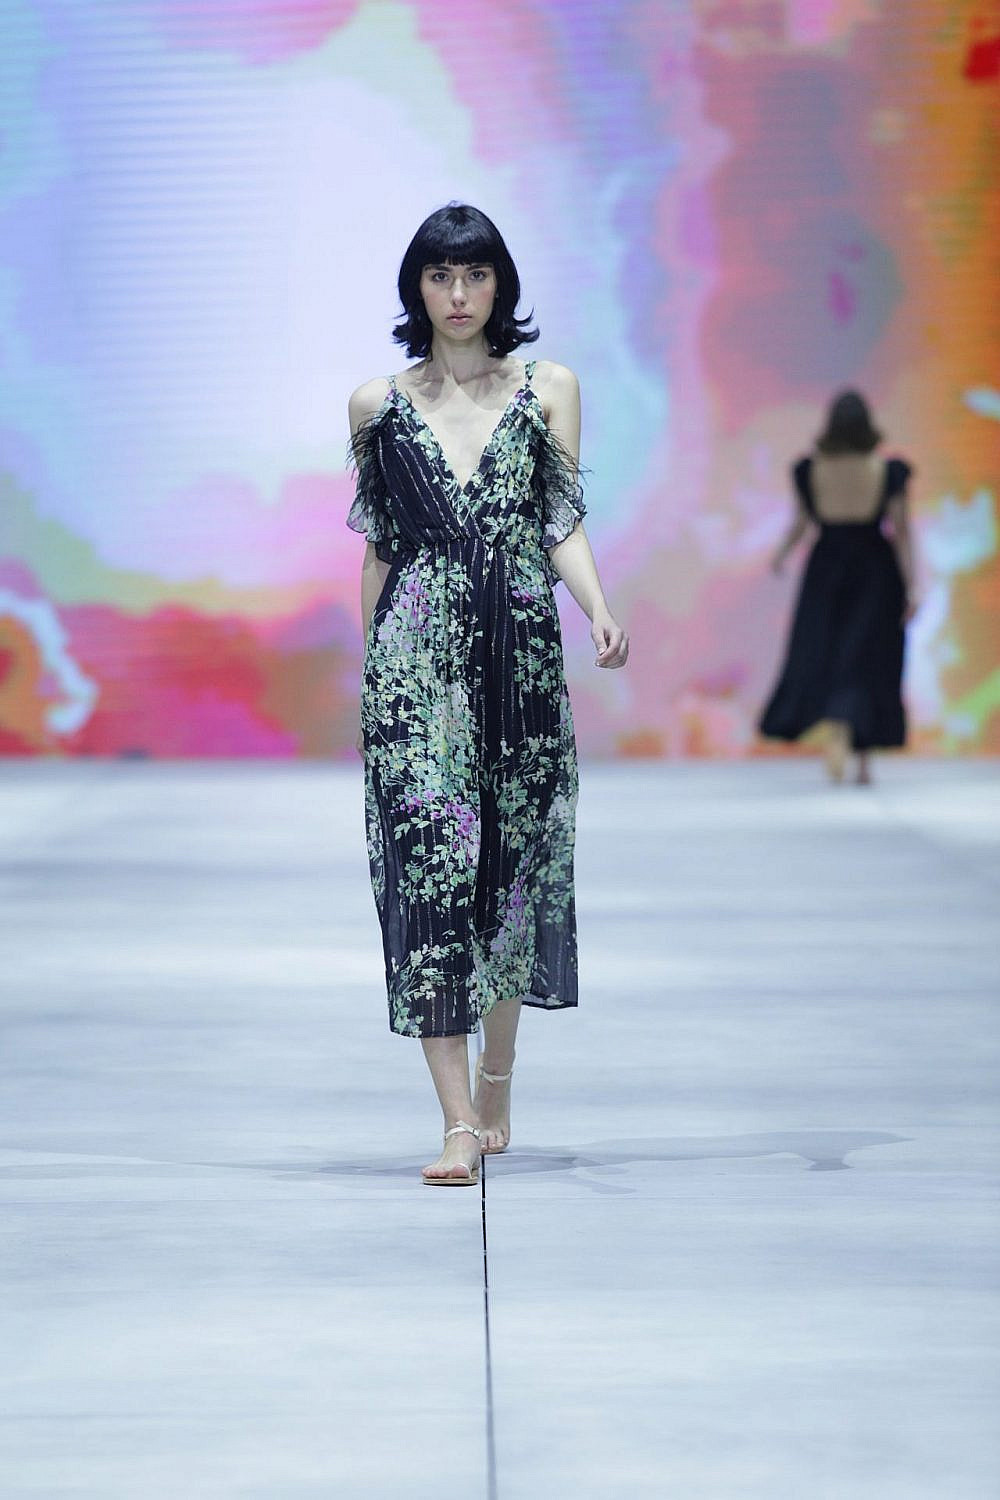 סבינה מוסייב בשבוע האופנה קורנית תל אביב 2022 | צילום: אבי ולדמן